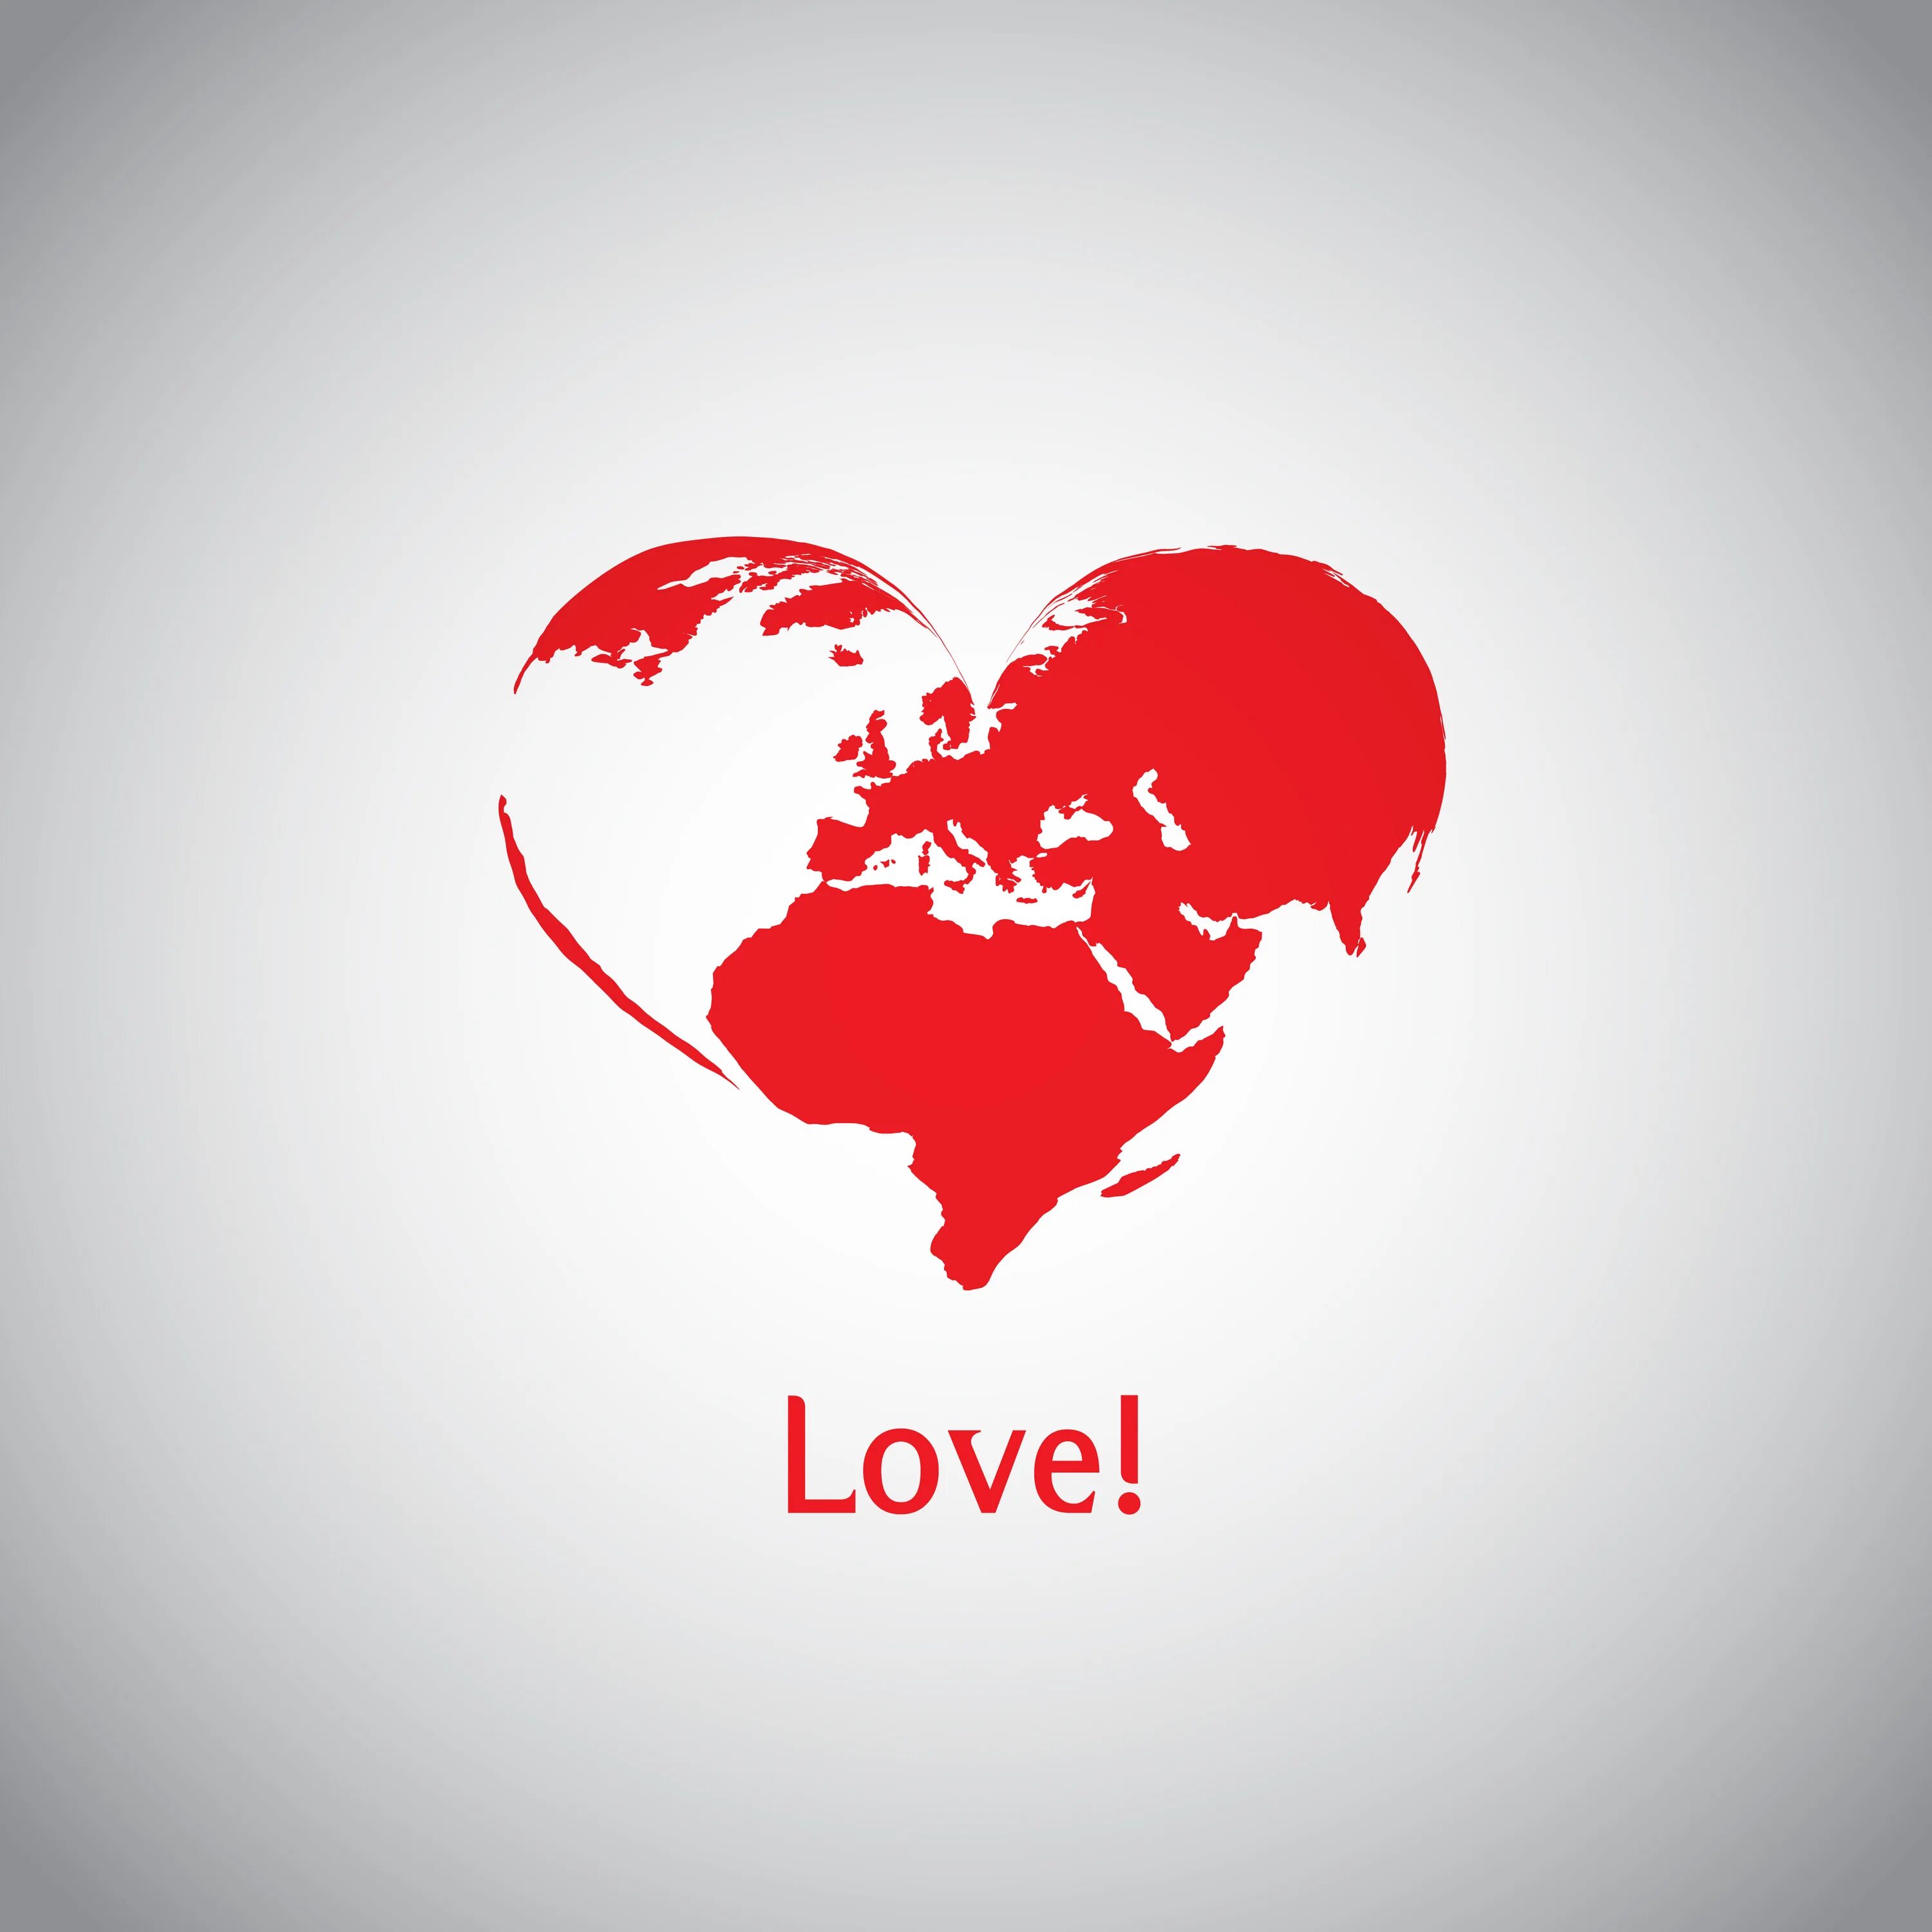 The world is heart. Мир в сердце. День глобальной любви. День глобальной любви (Global Love Day). Мир любовь сердца.